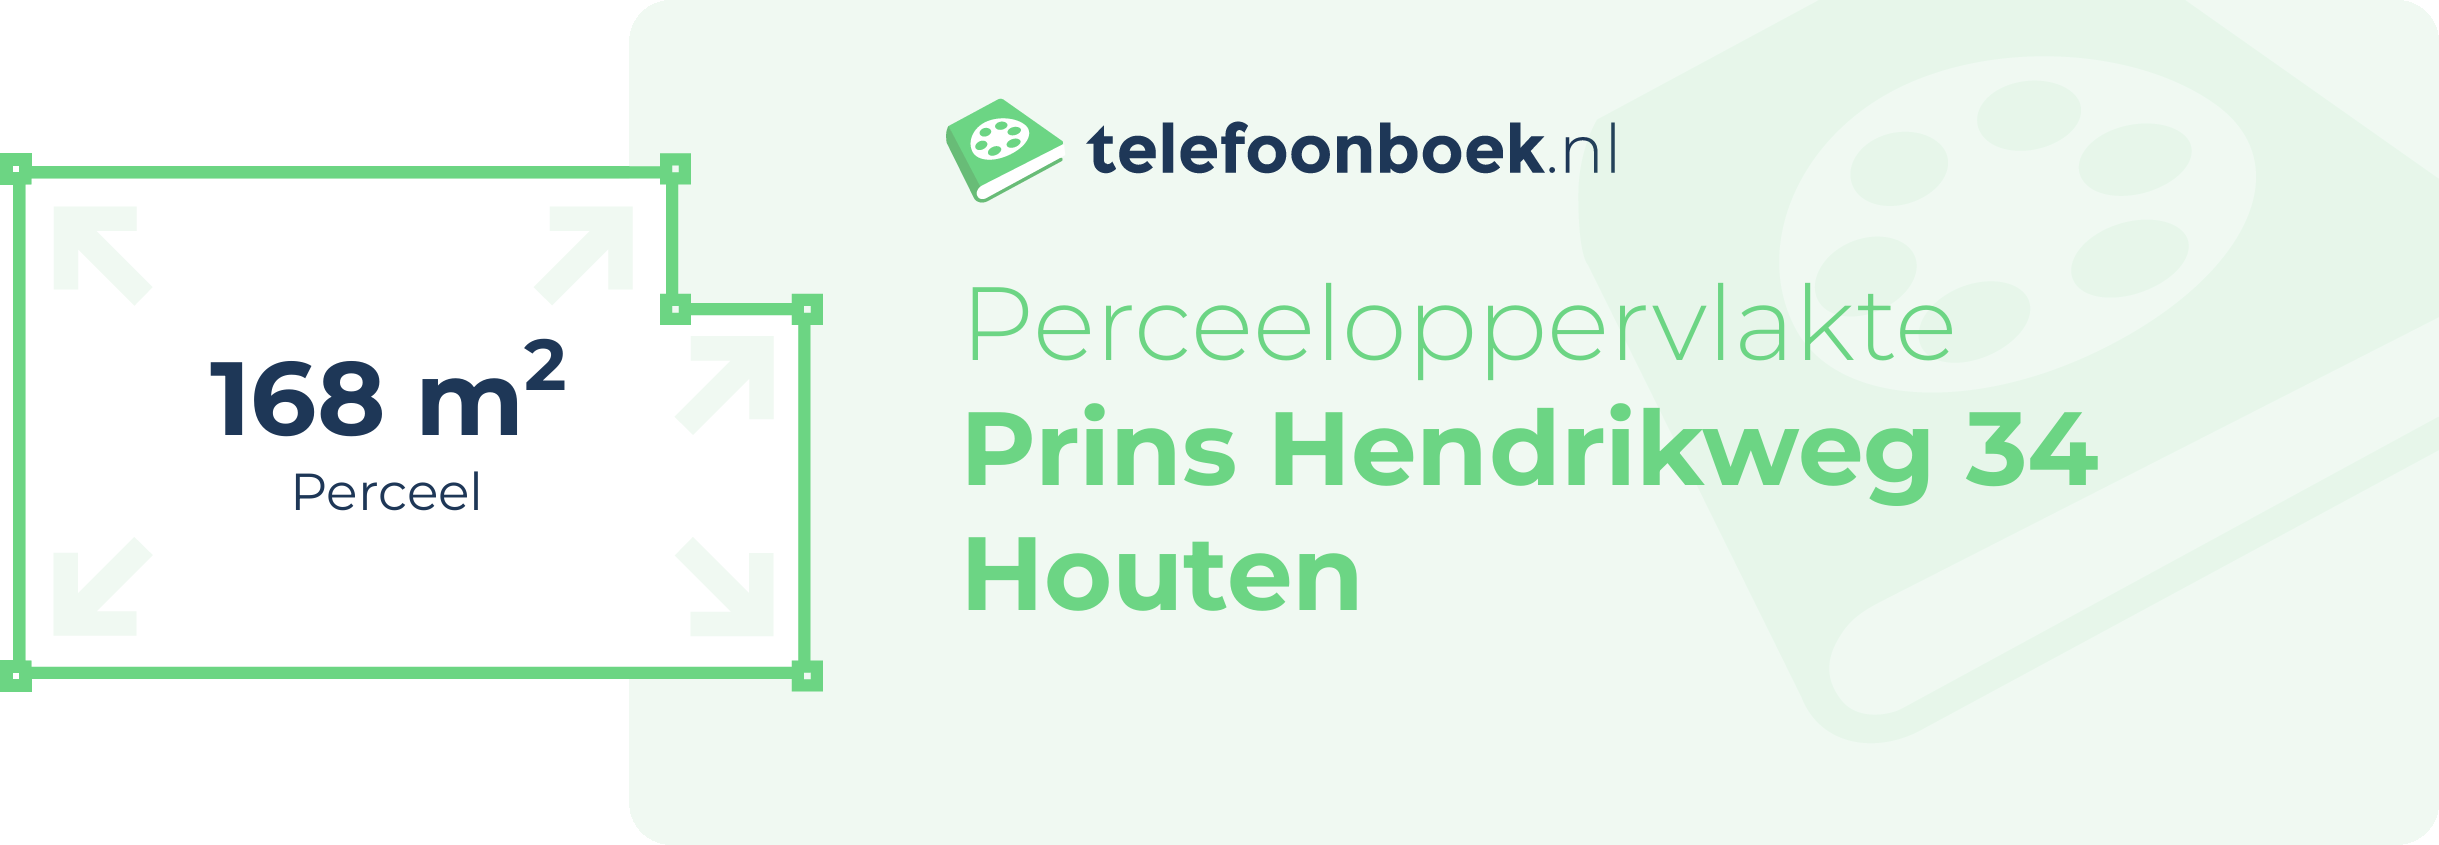 Perceeloppervlakte Prins Hendrikweg 34 Houten